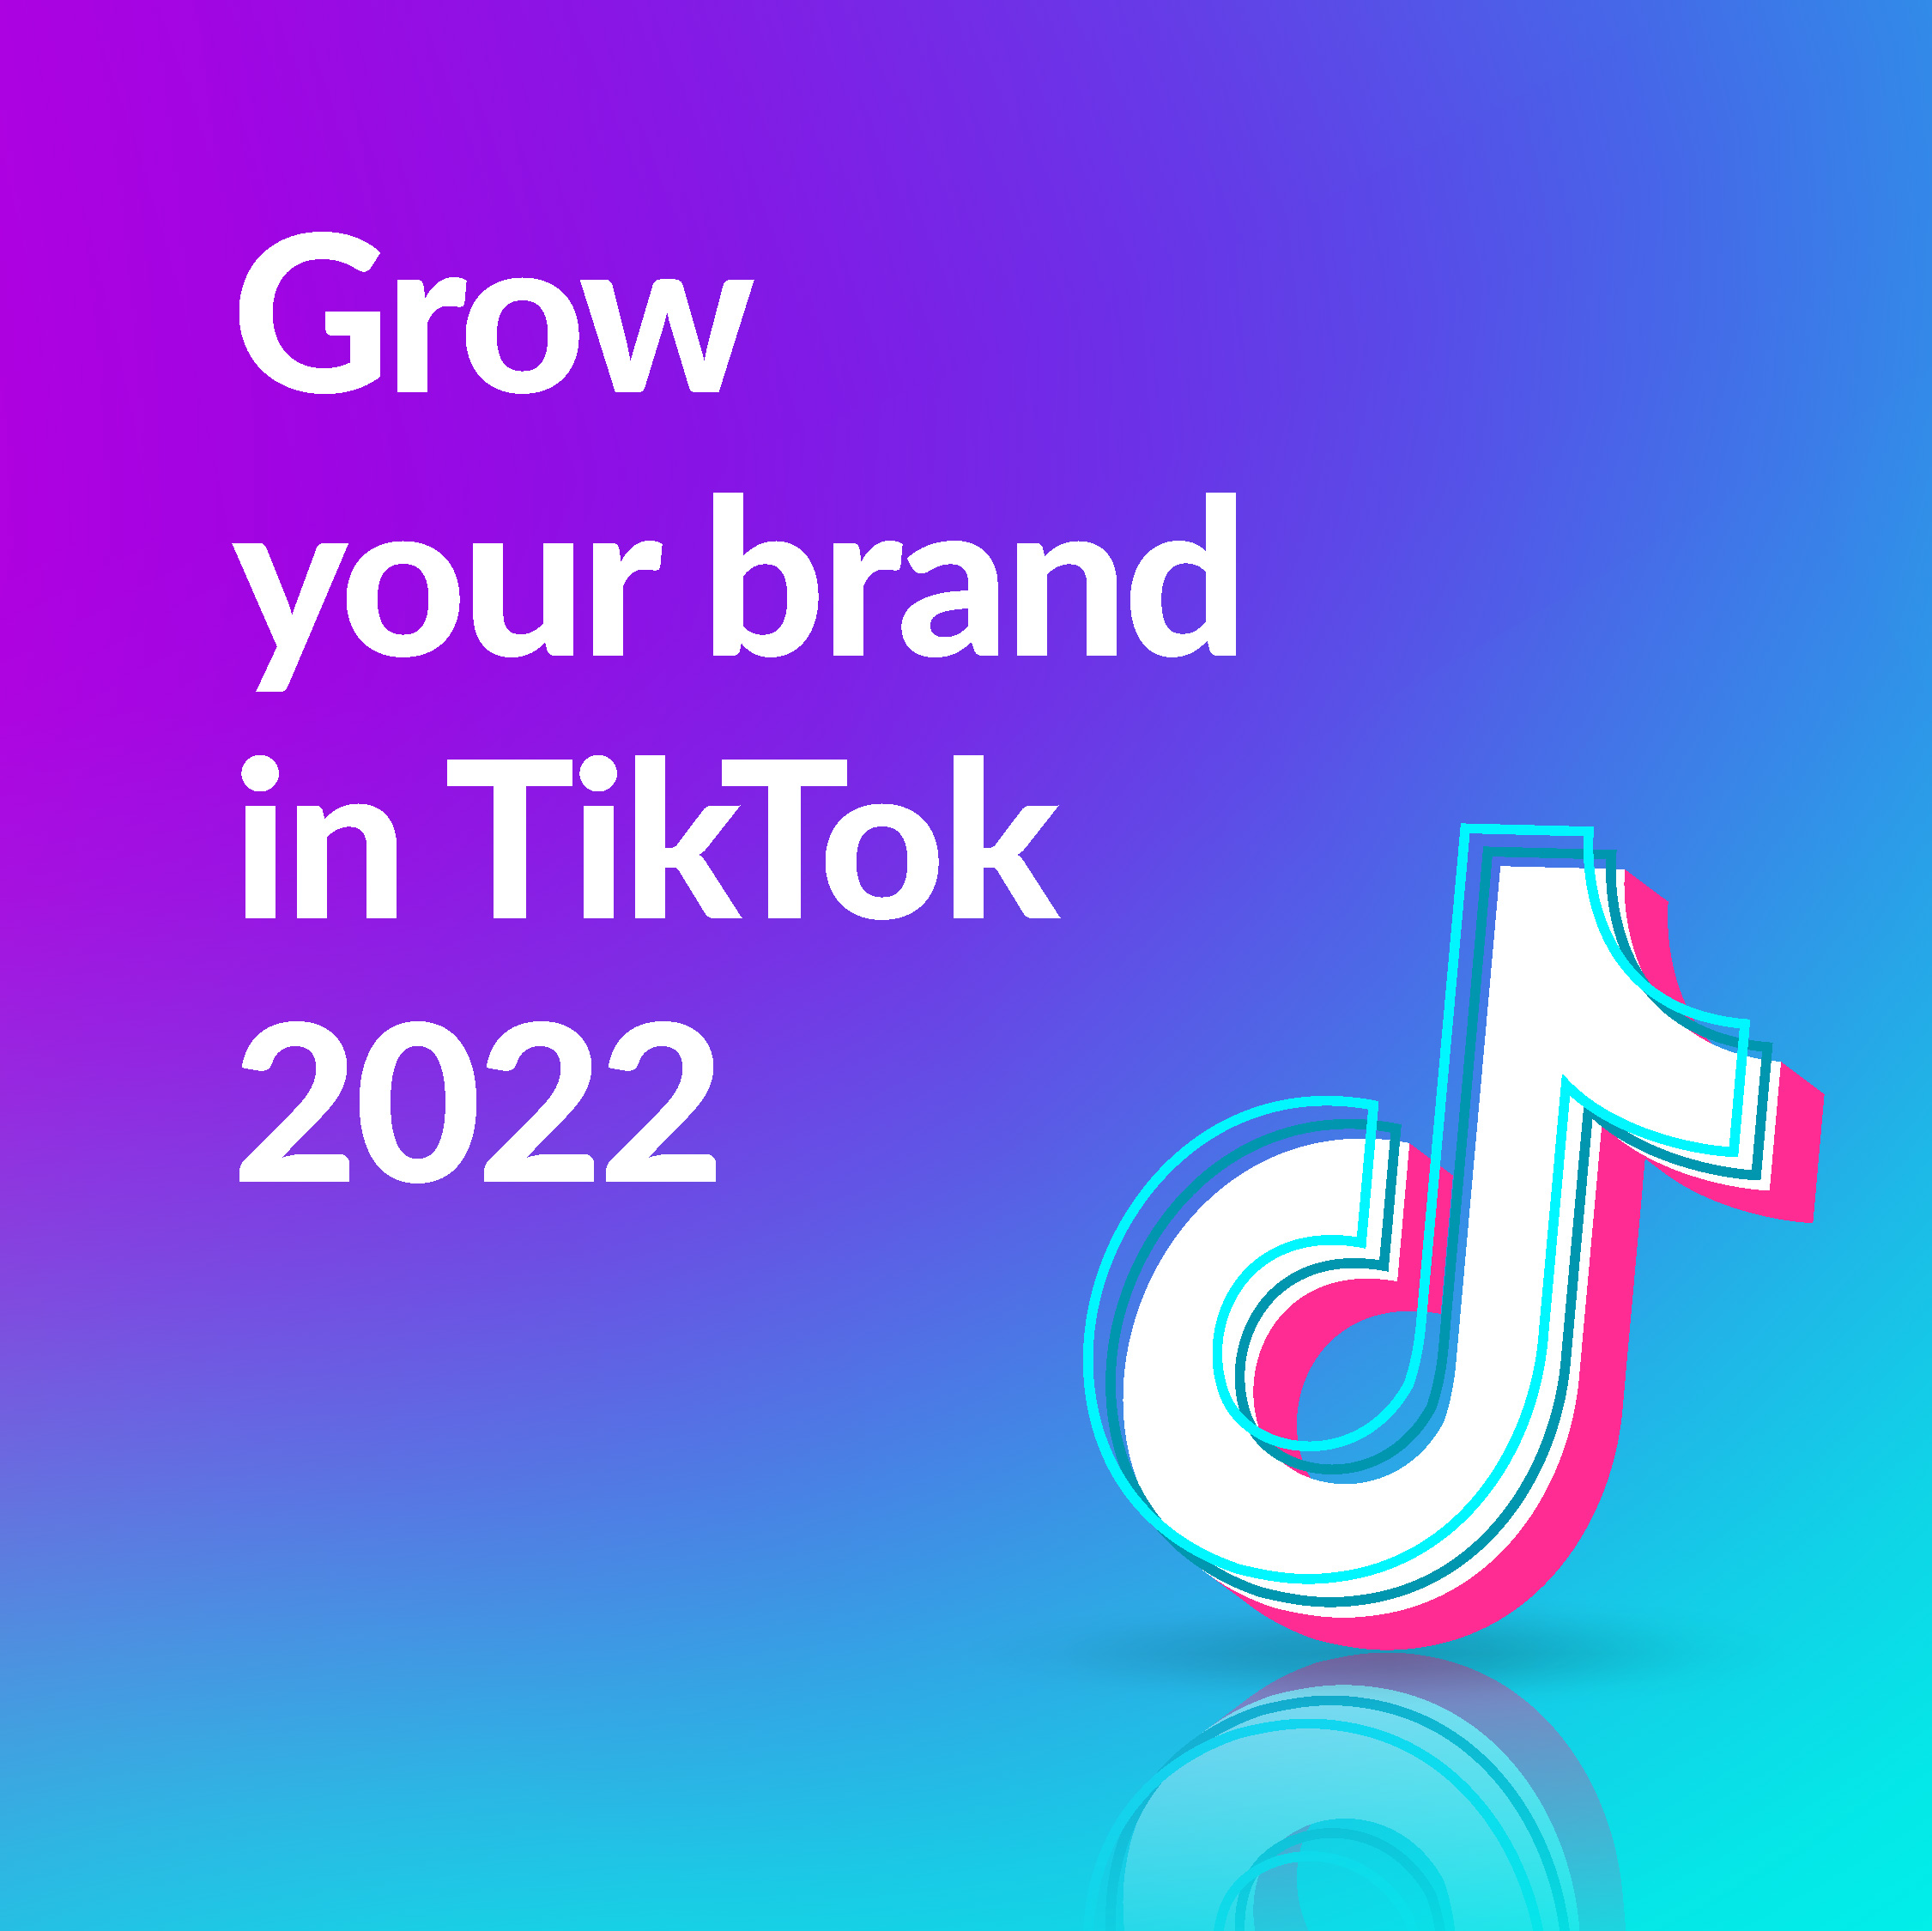 Grow your brand in Tiktok 2022